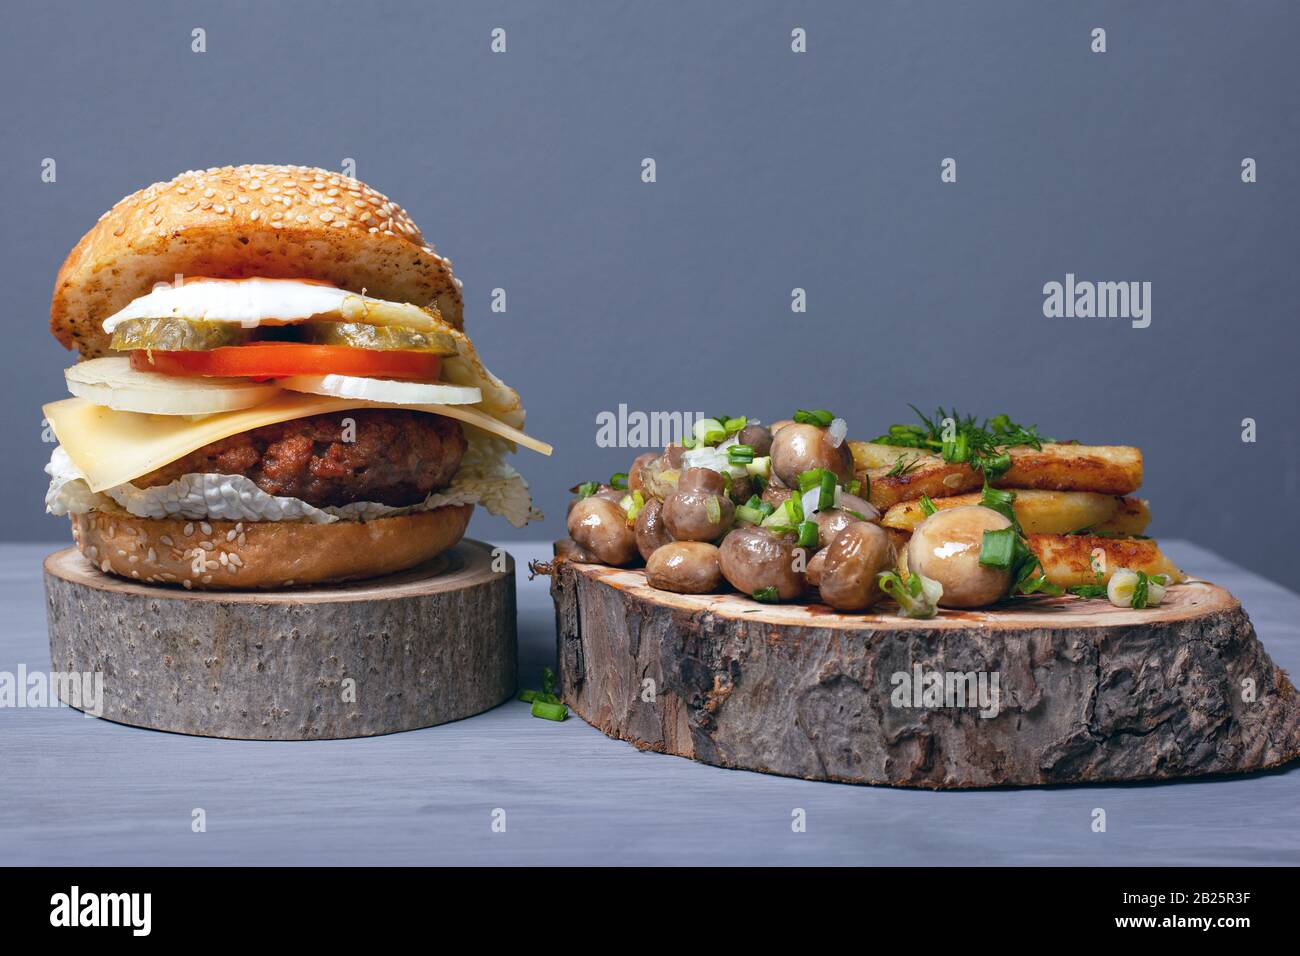 Saftiger Fettburger, gebratene Kartoffeln und Champignons mit Kräutern auf Holztabletts auf grauem Grund, interessante und ungewöhnliche Gerichte für fast Food. Stockfoto